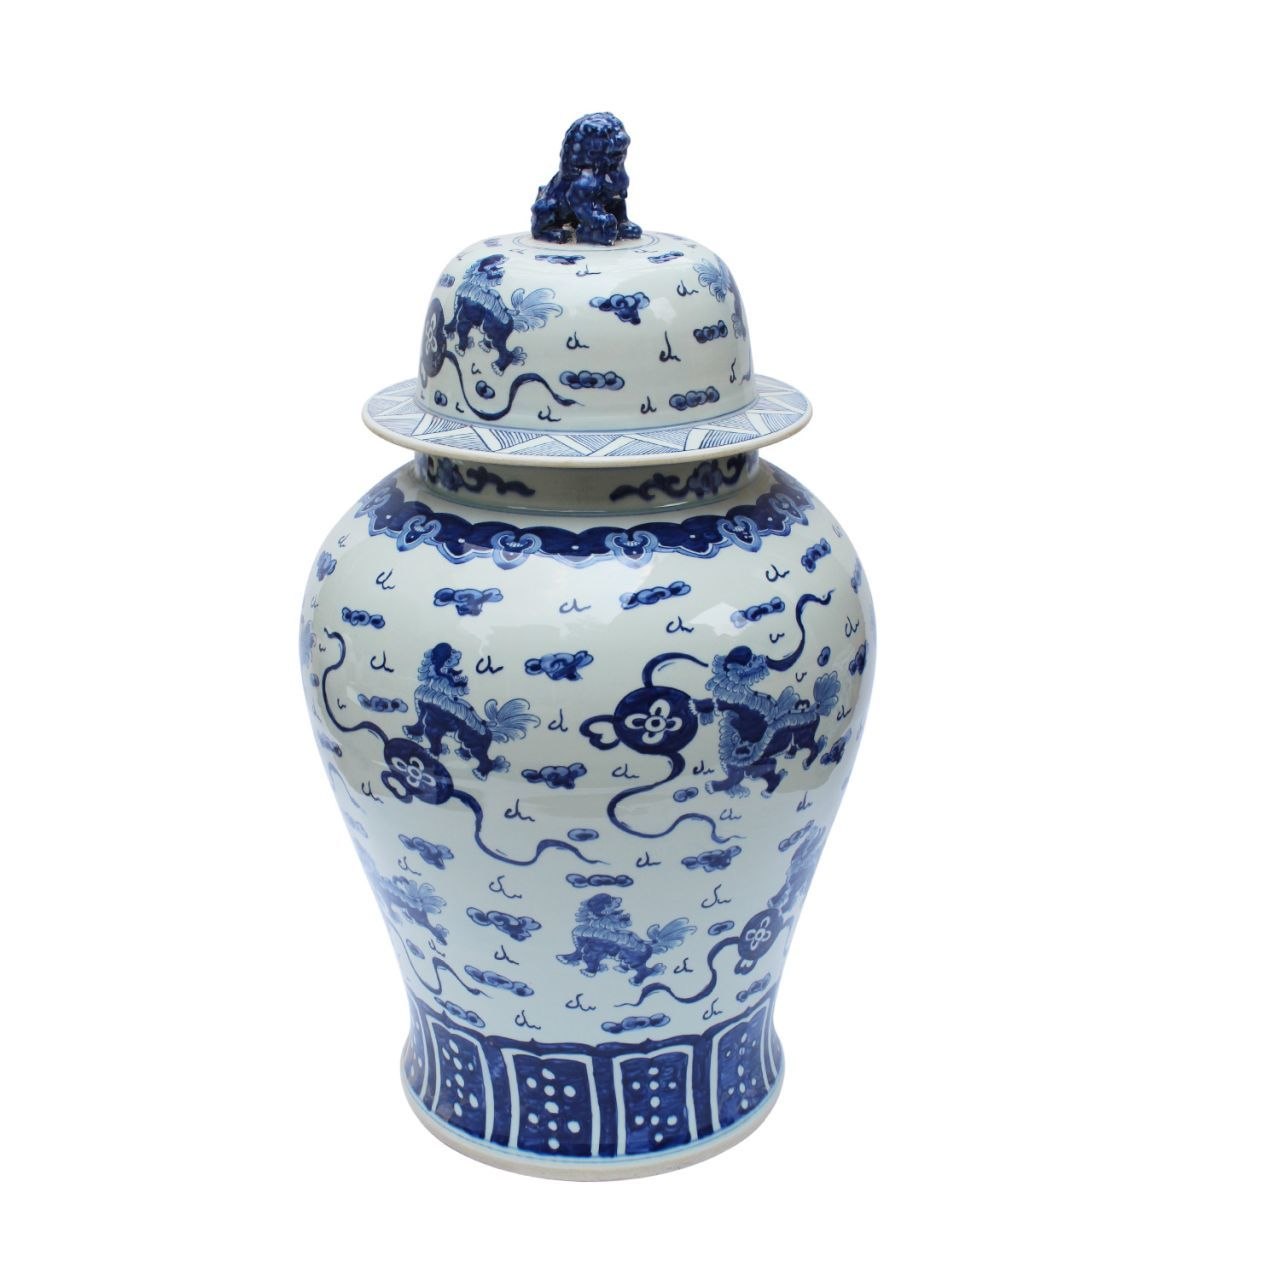 Blue and White Foo Dog Motif Large Porcelain Temple Jar 34"